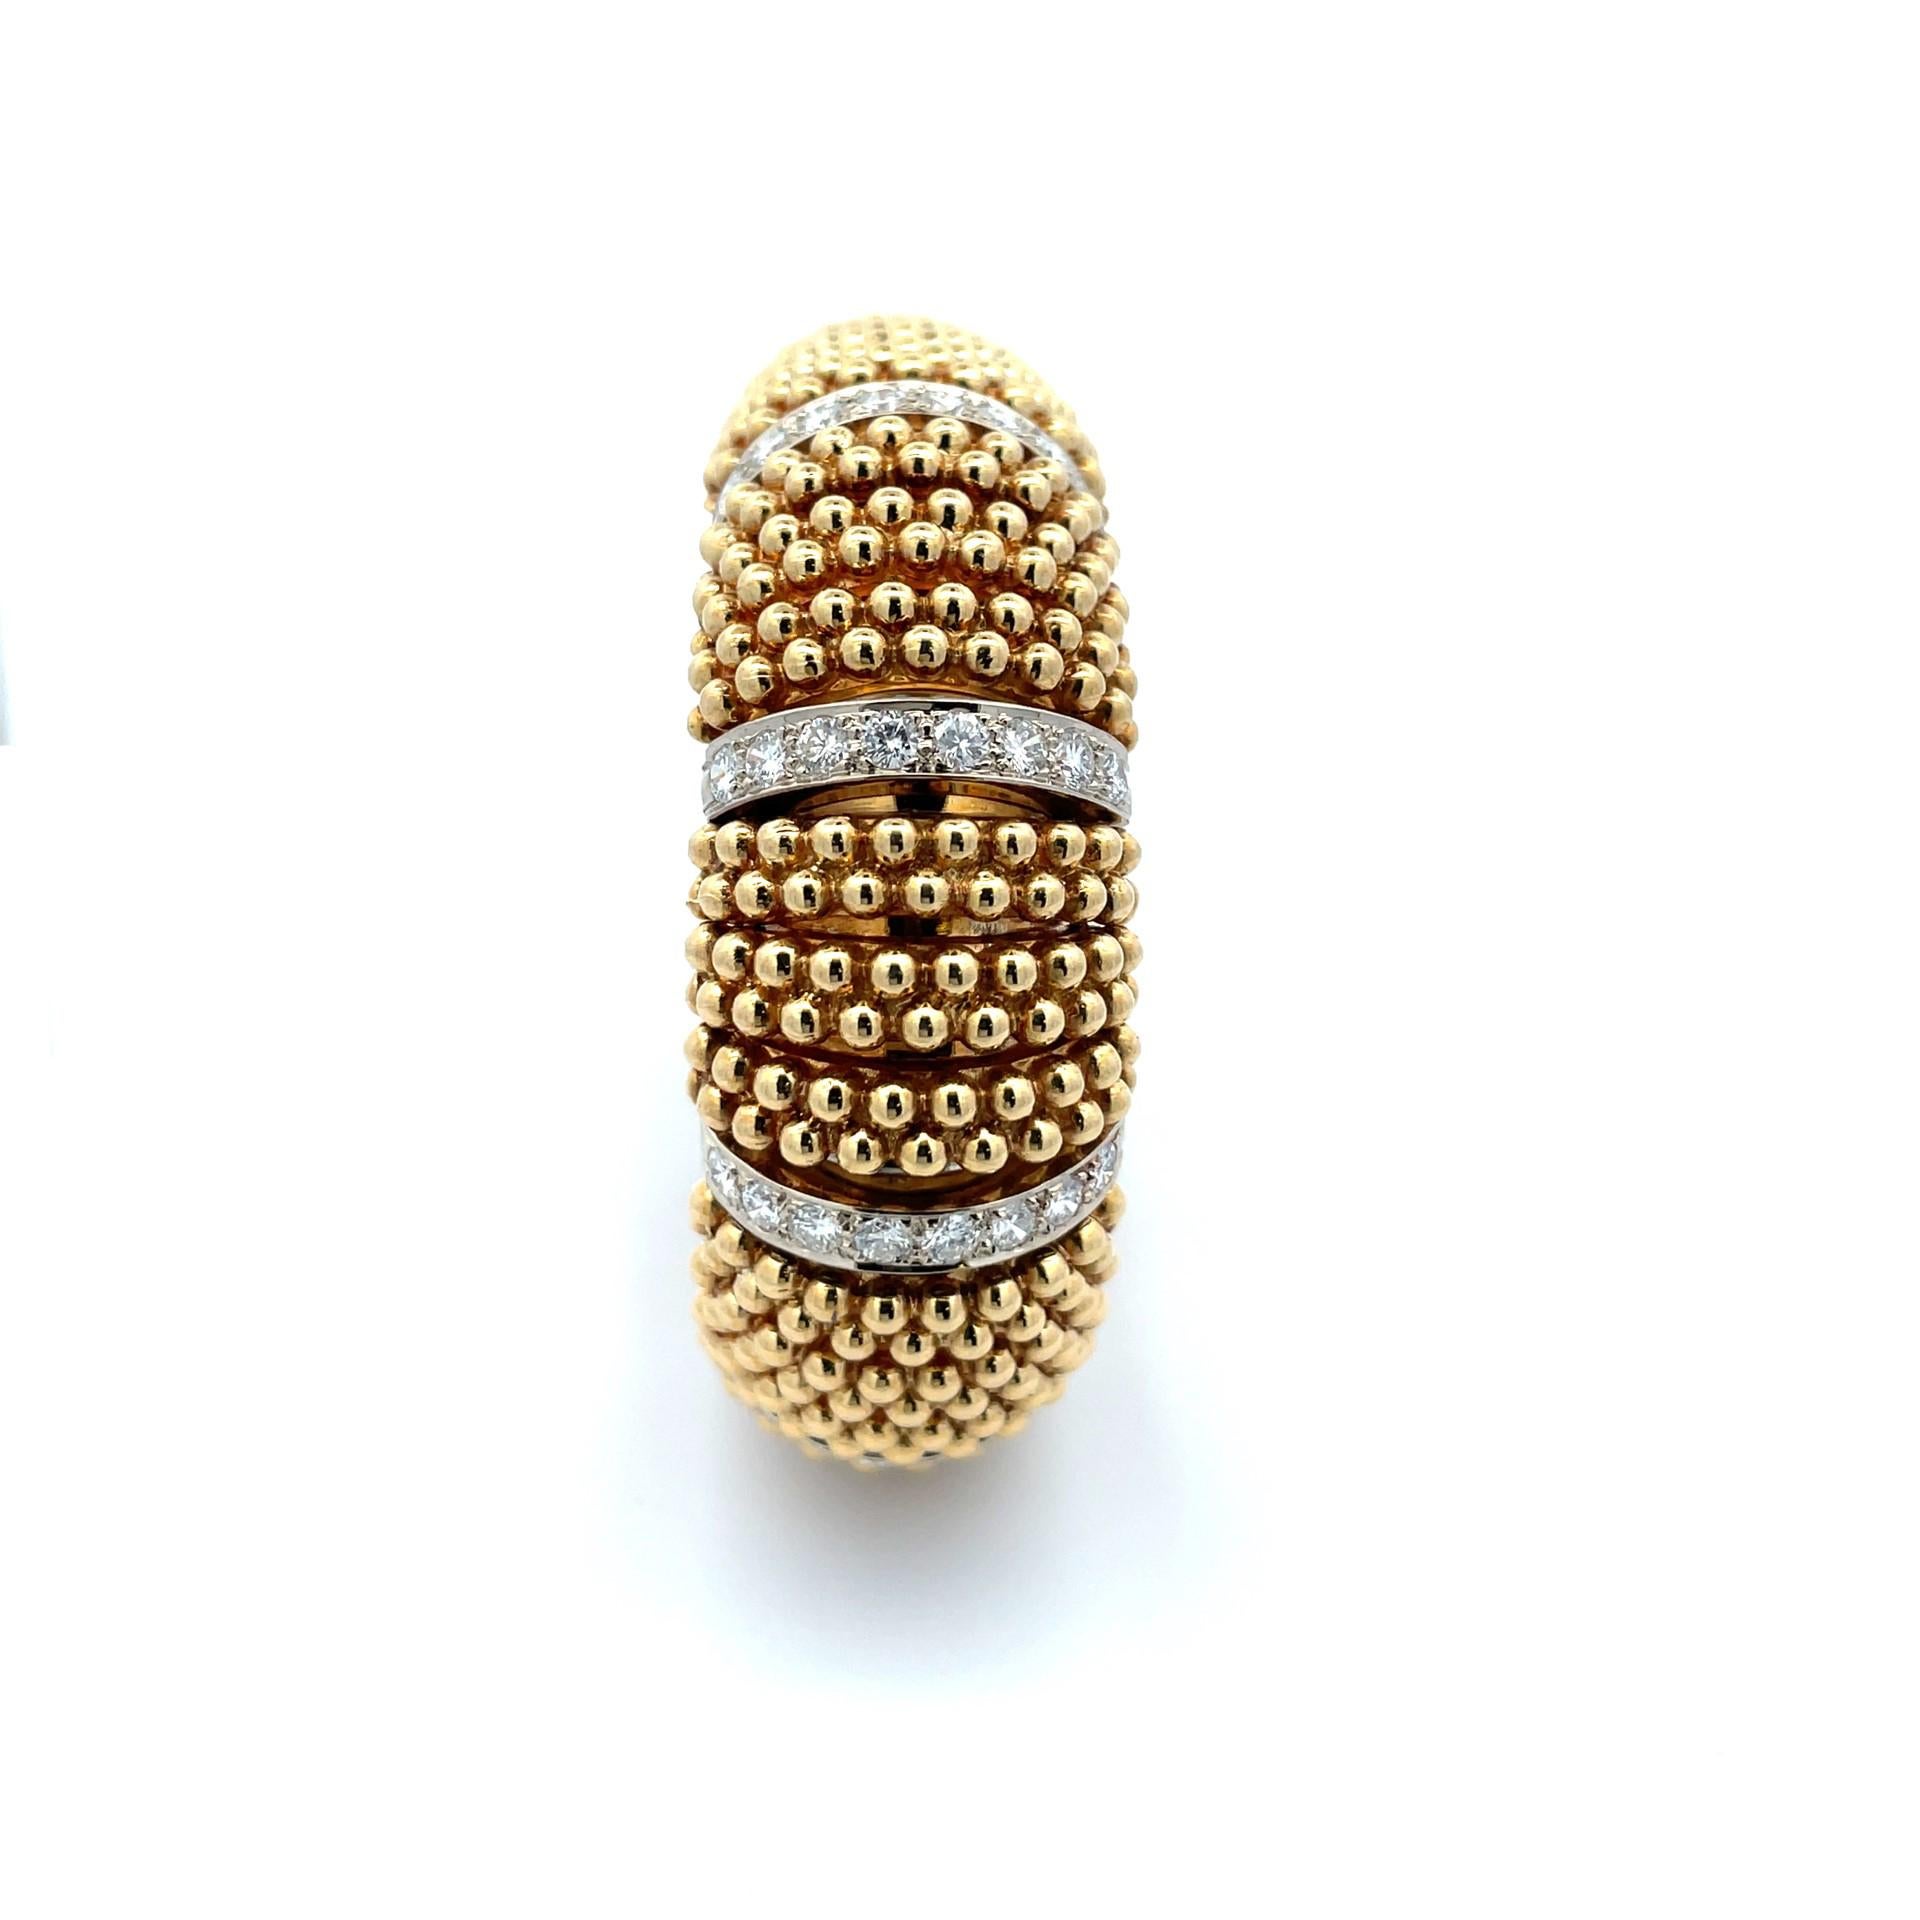 Bracelet vintage multi-rangs en perles d'or et diamants avec stations en or jaune 18 carats et stations en diamants en or blanc 14 carats. 

80 diamants taille brillant pesant 5,20ct twt.

 Or pesant 91,60 grammes

0,75